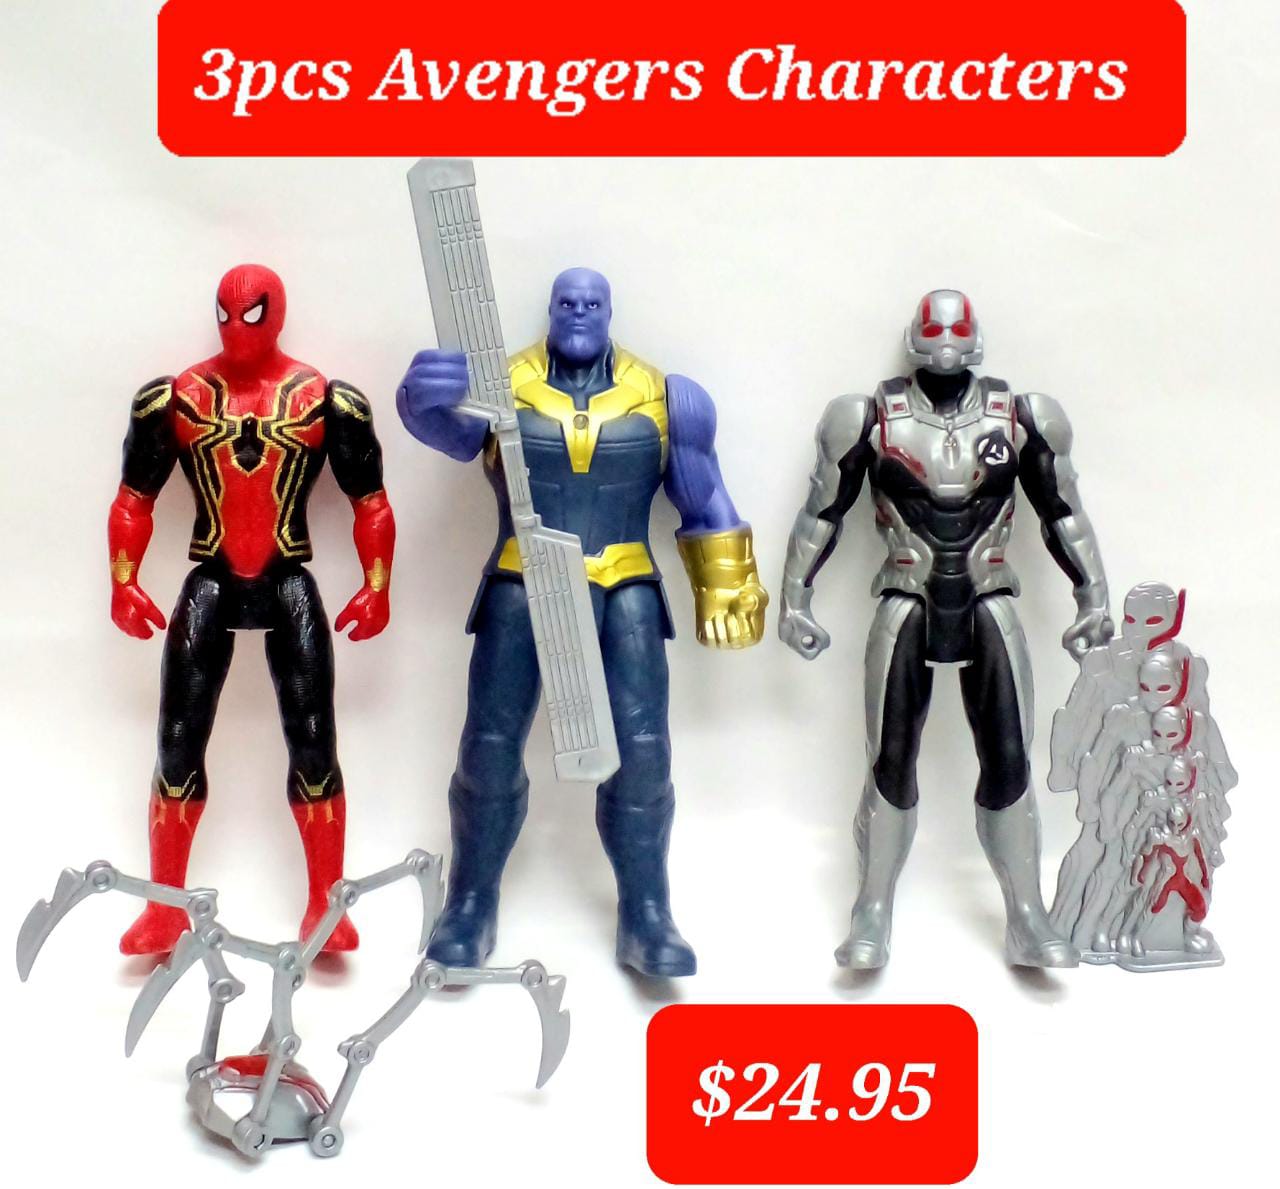 3pcs Avengers characters